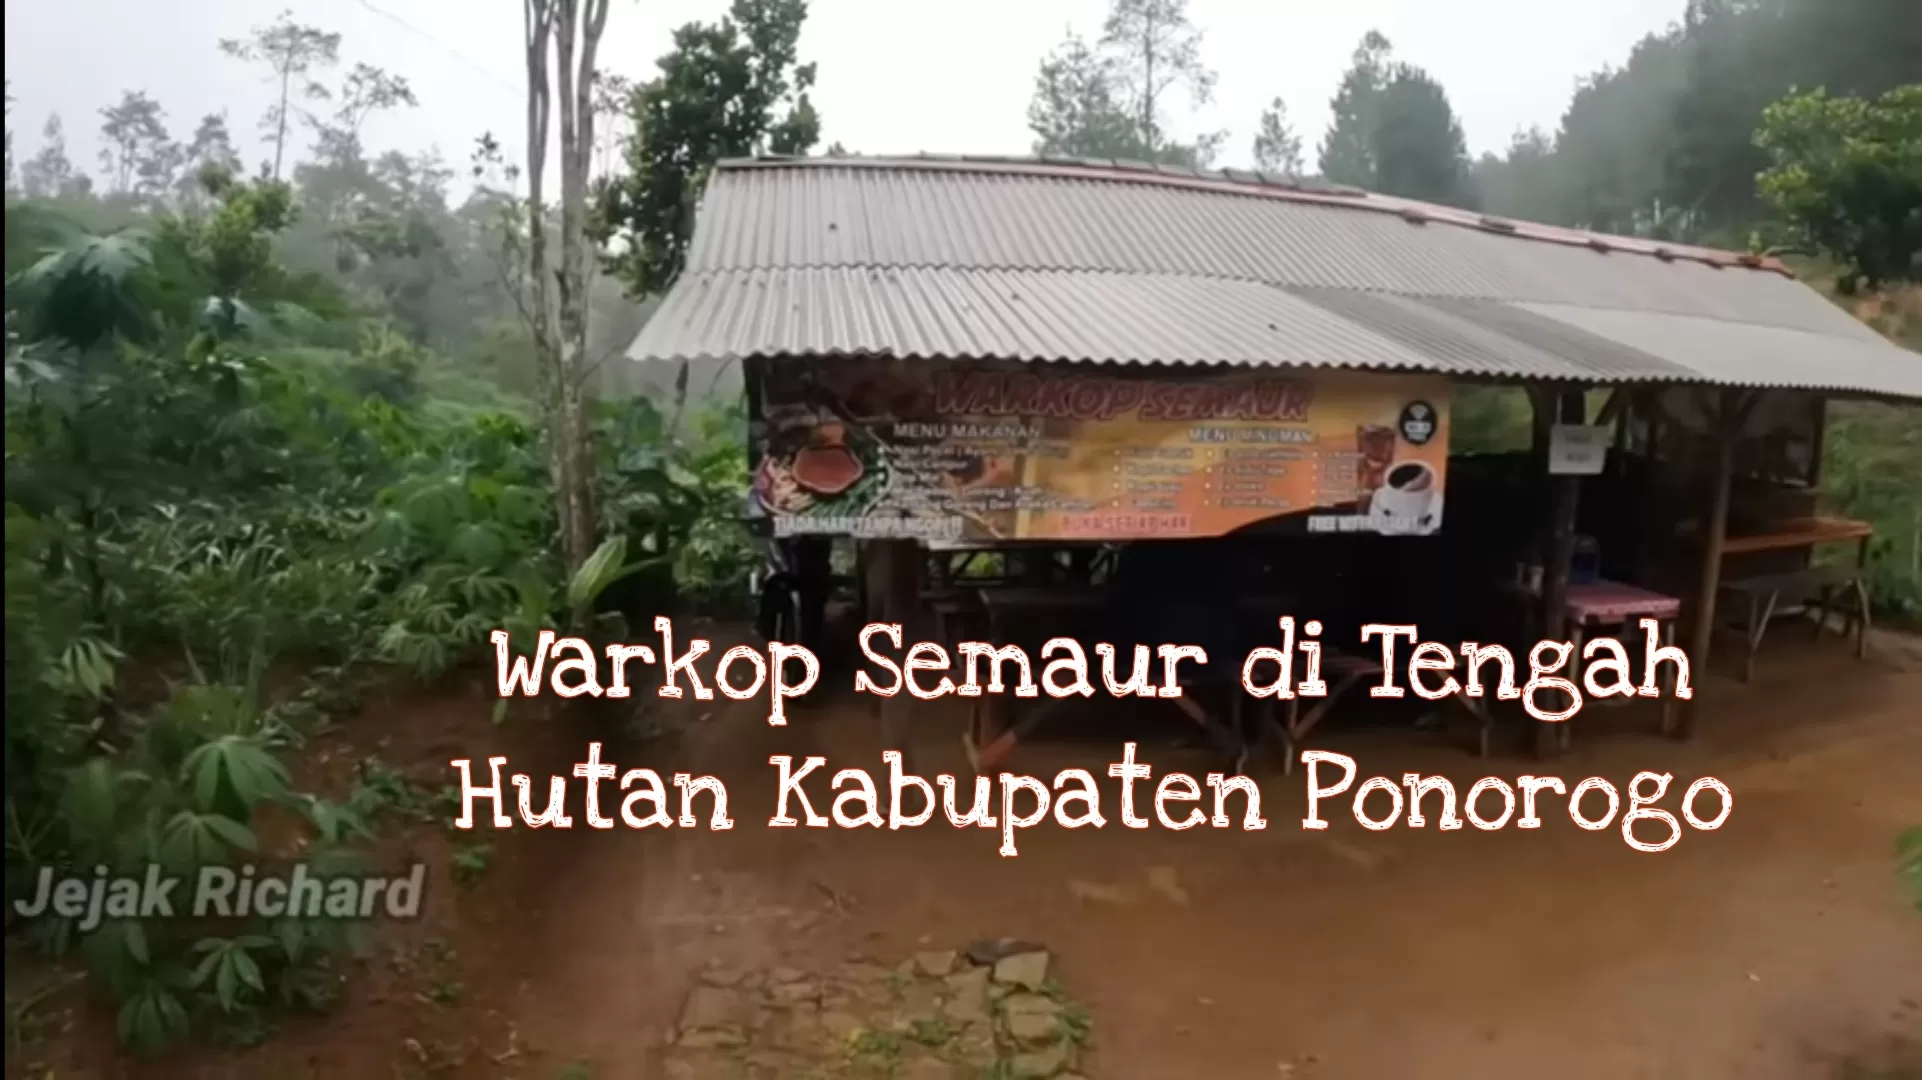 Warung Menyendiri di Tengah Hutan Dekat Wisata Watu Semaur Kabupaten Ponorogo Jawa Timur Buka Setiap Hari: Menunya...